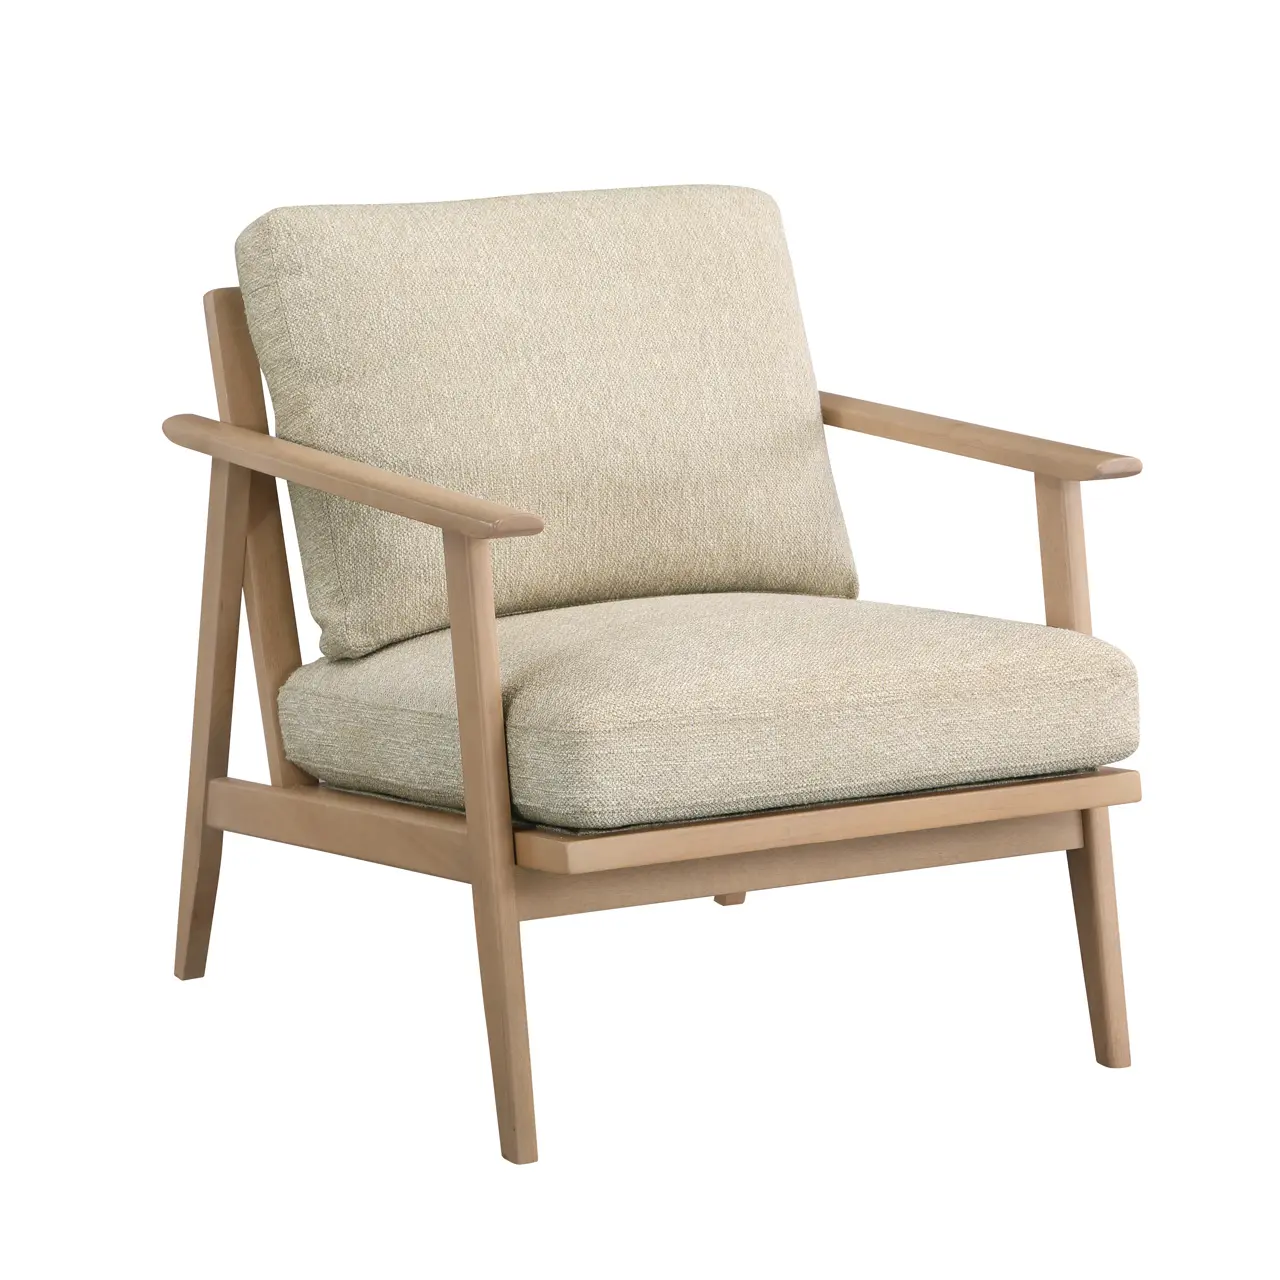 Mobiliário moderno simples estilo de linho de tecido, estofado de madeira único assento cadeira de braço, cadeira de madeira para relaxar acessório côncava cadeira